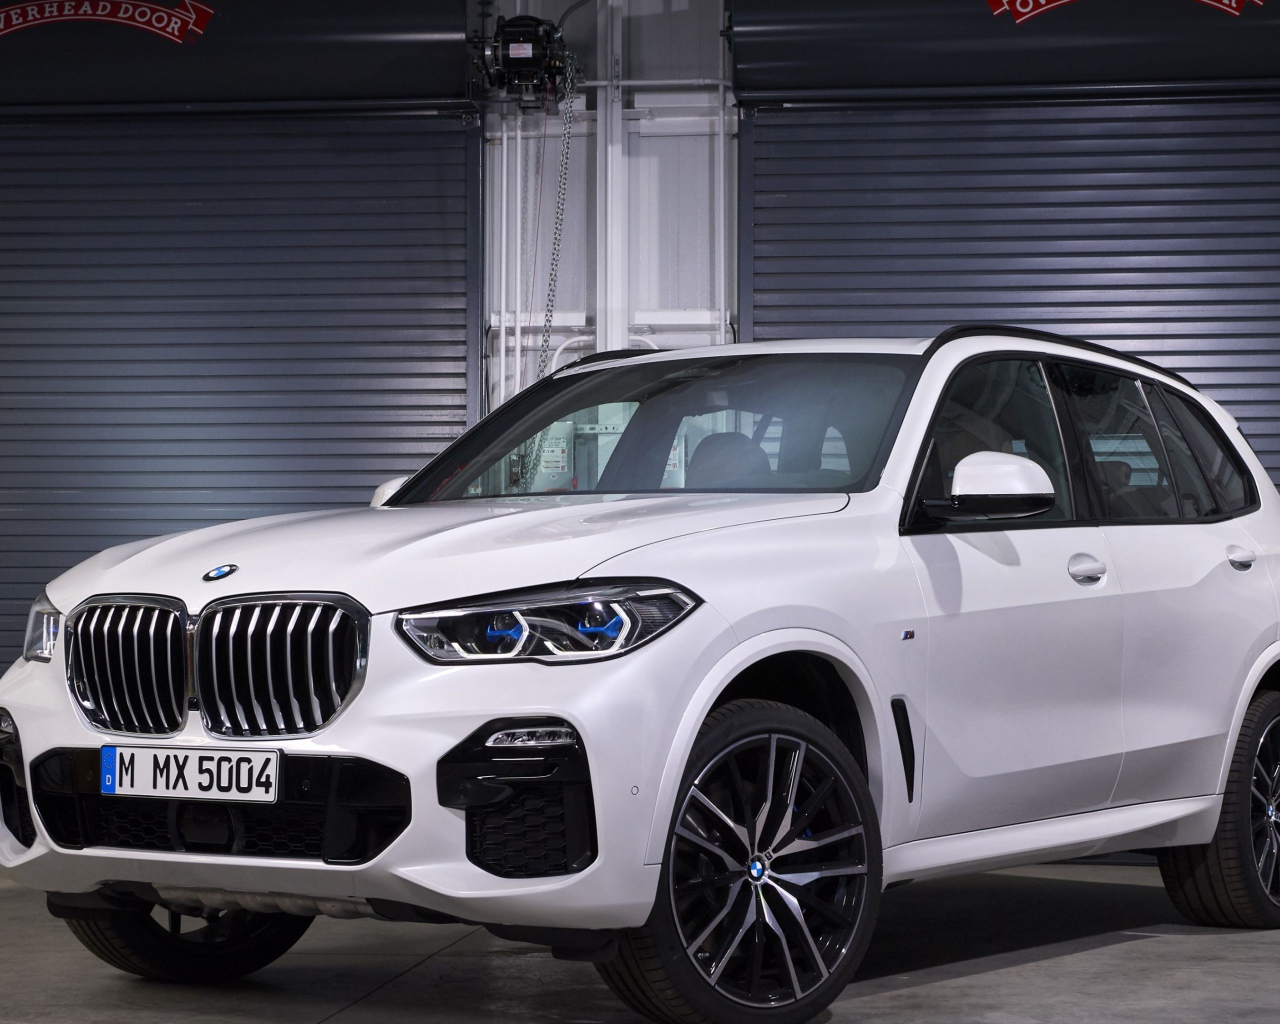 Белый внедорожник BMW X5, 2019 года в гараже